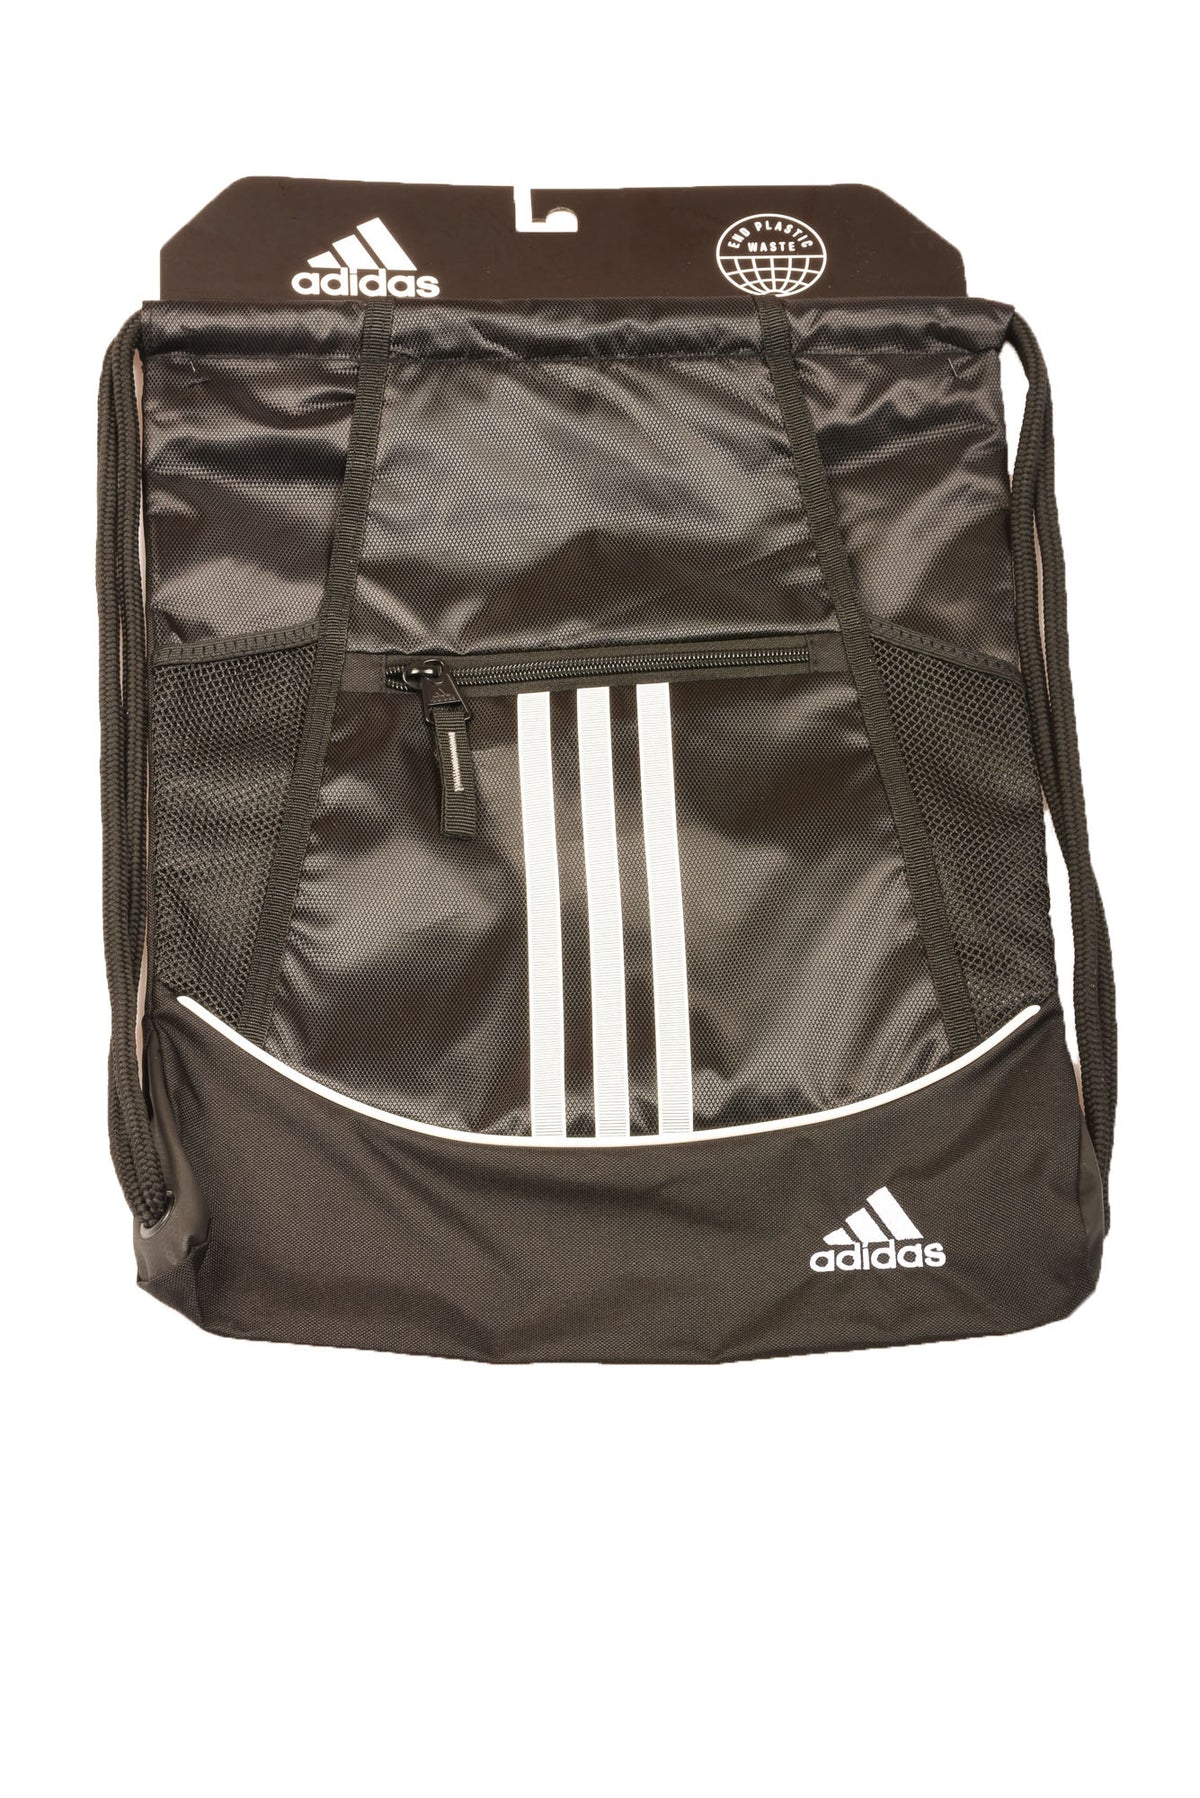 Adidas Activewear Backpack